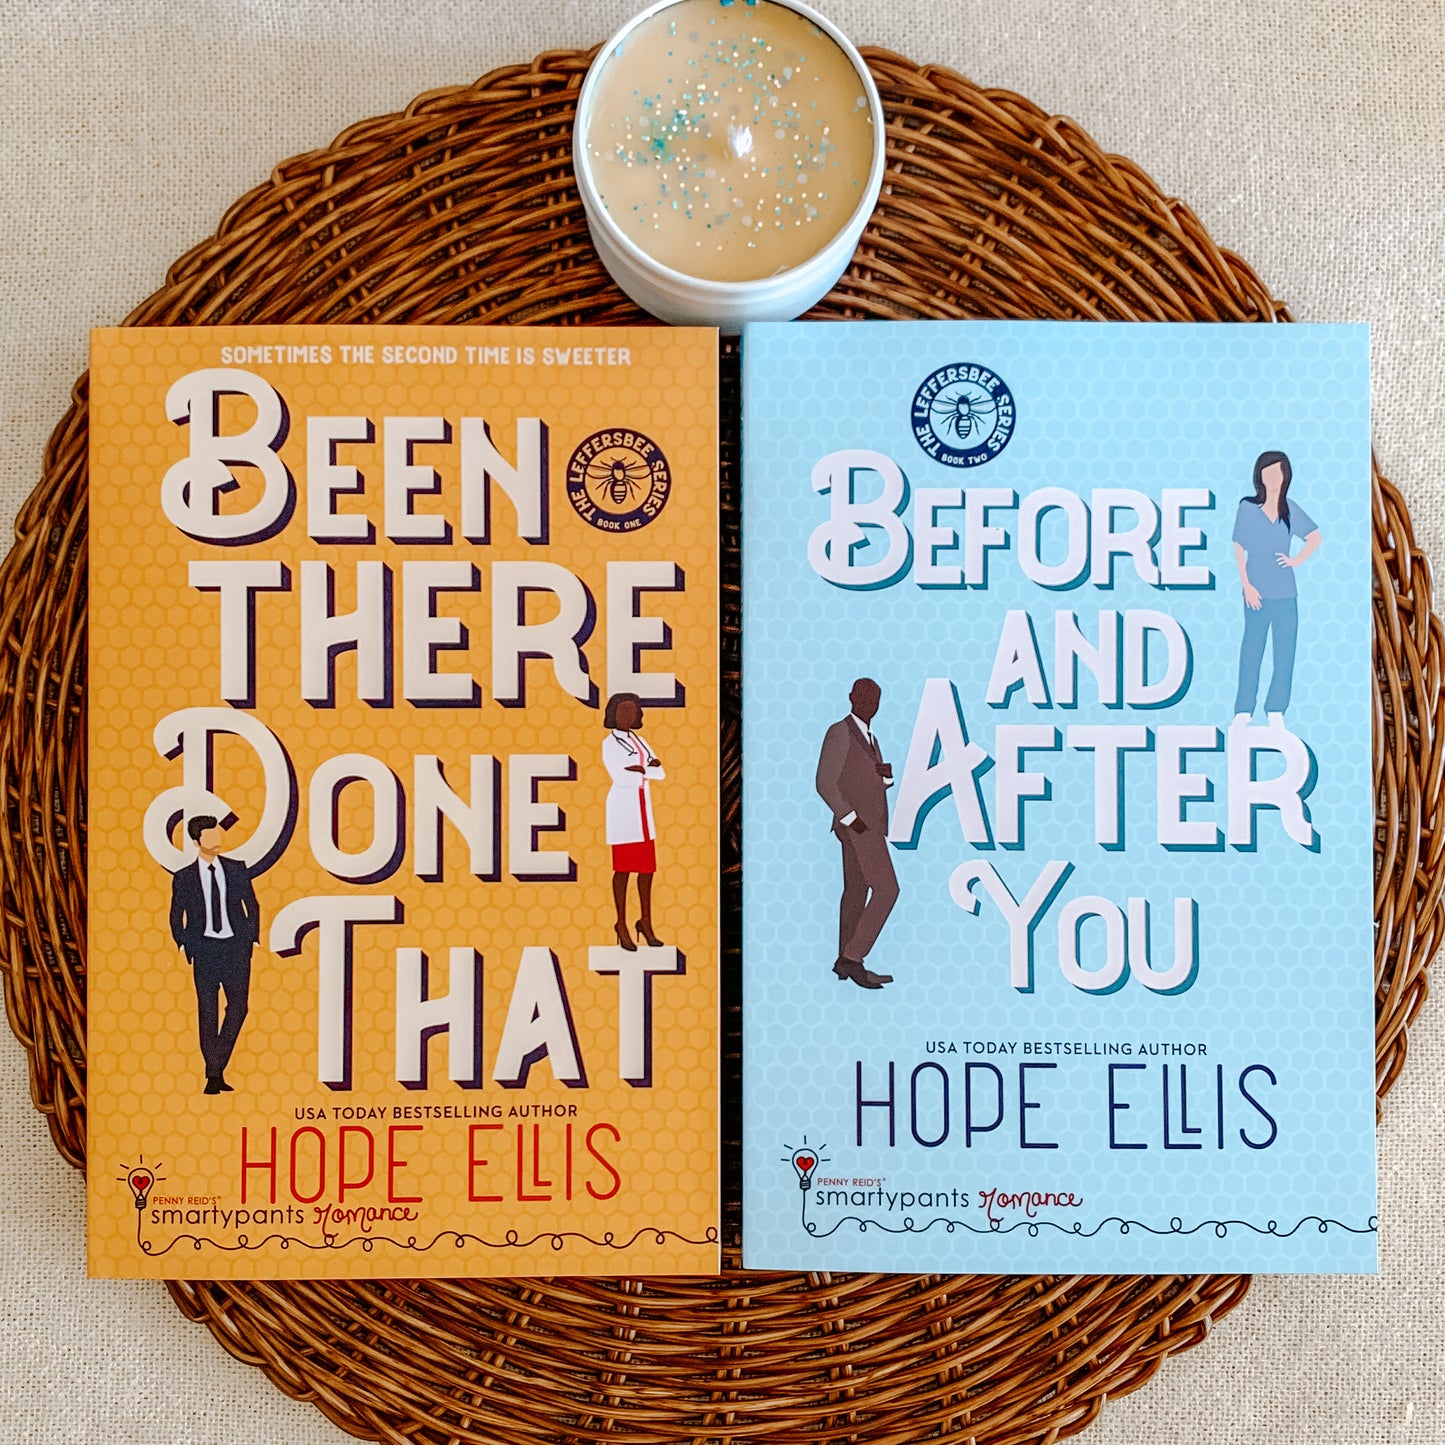 Leffersbee Series by Hope Ellis